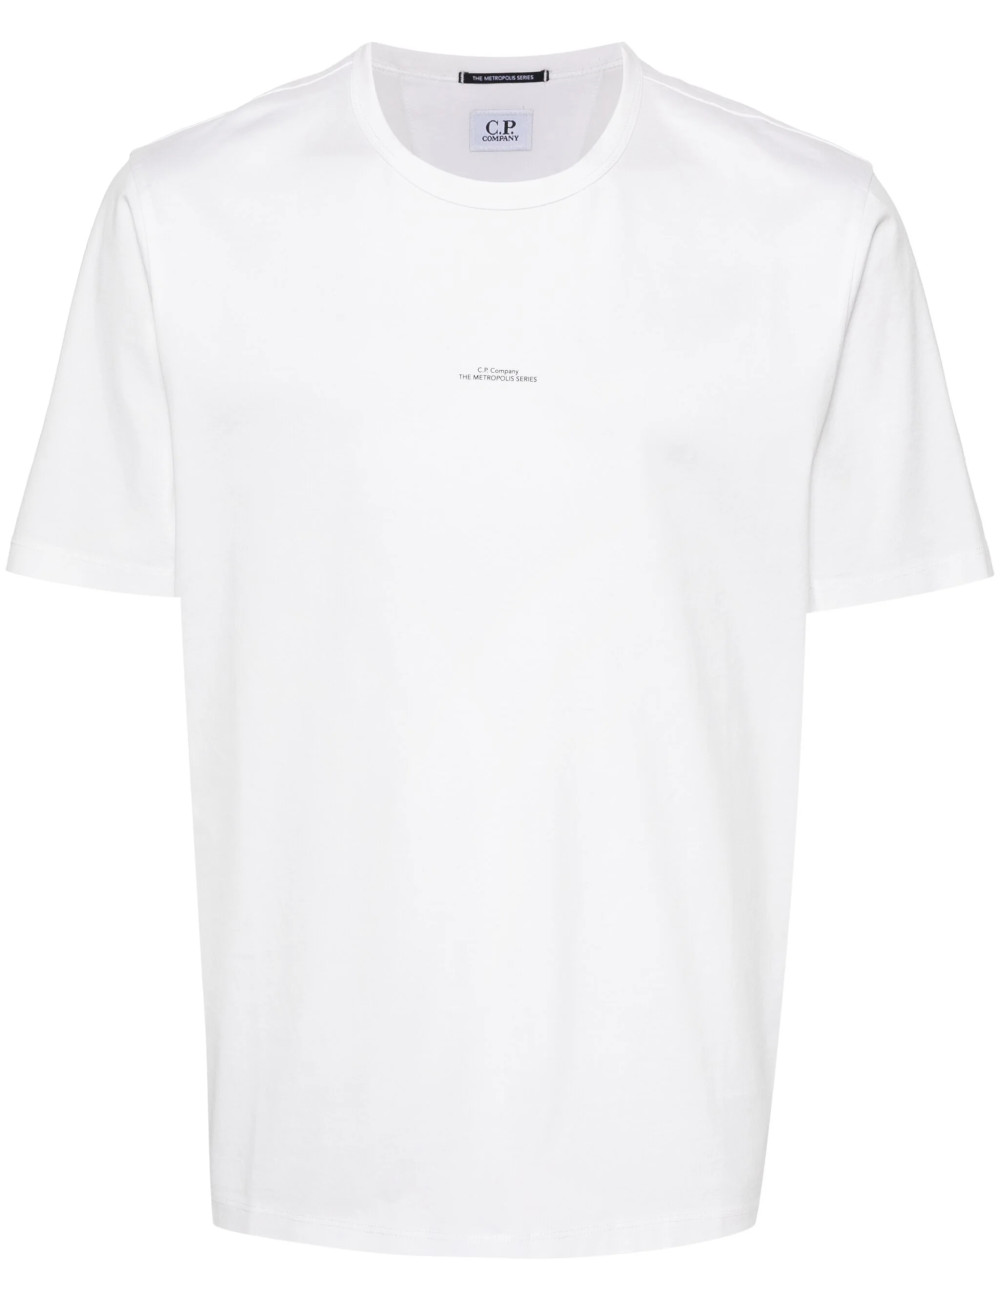 Men's Slogan Print T-Shirt